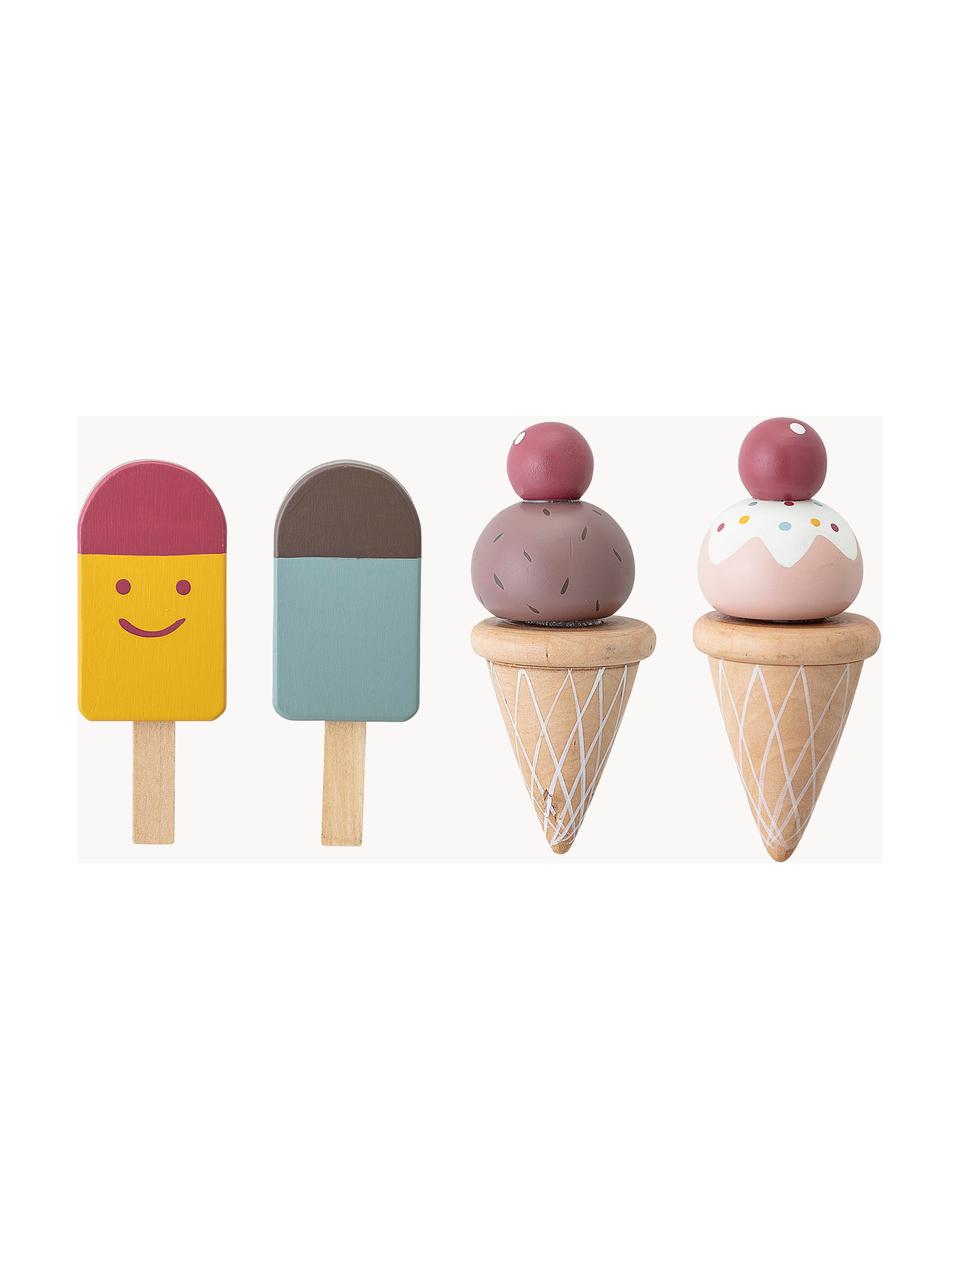 Sada hraček ve tvaru zmrzliny Hasham, 5 dílů, Dřevovláknitá deska střední hustoty (MDF), Více barev, Š 14 cm, V 15 cm